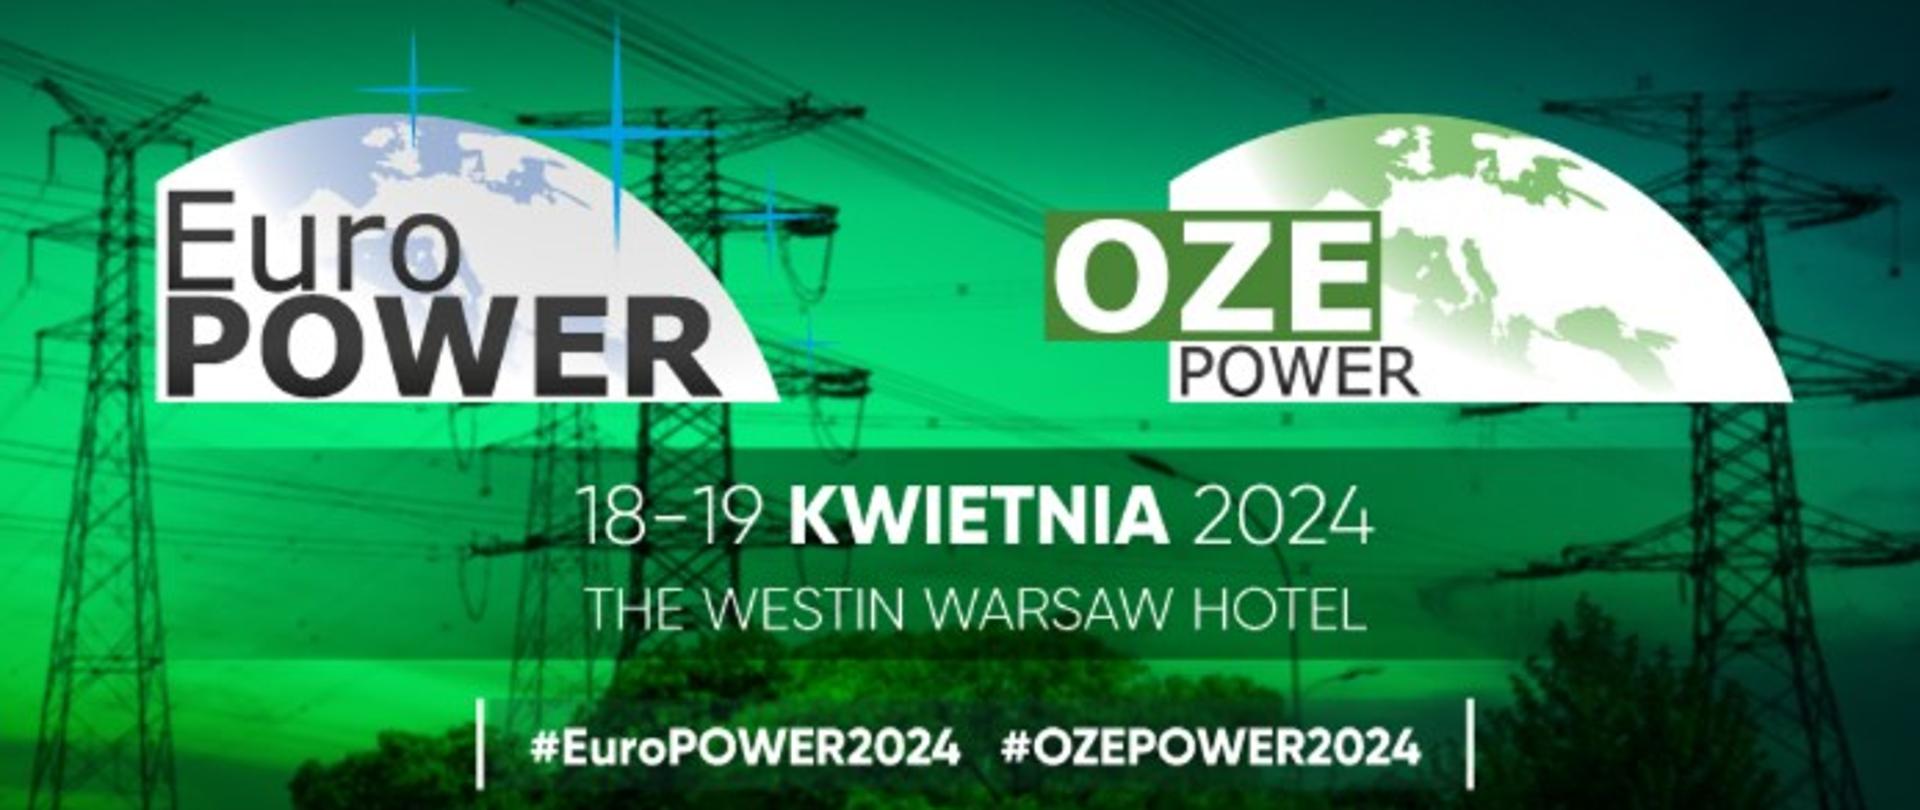 Plansza informacyjna o Euro Power OZE Power 18-19 kwietnia 2024